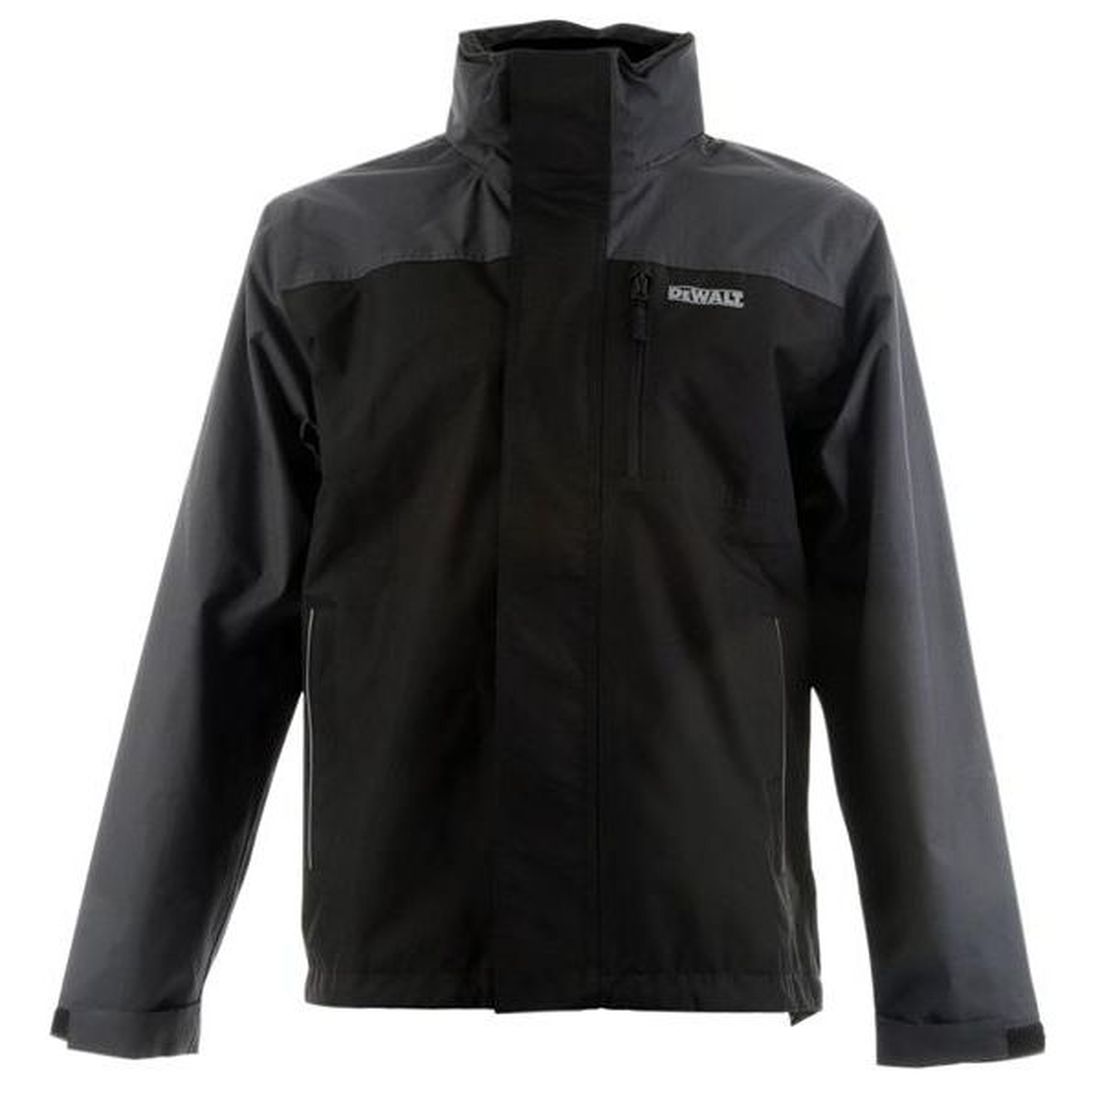 DEWALT Storm Waterproof Jacket Grey/Black - M (42in)                                   